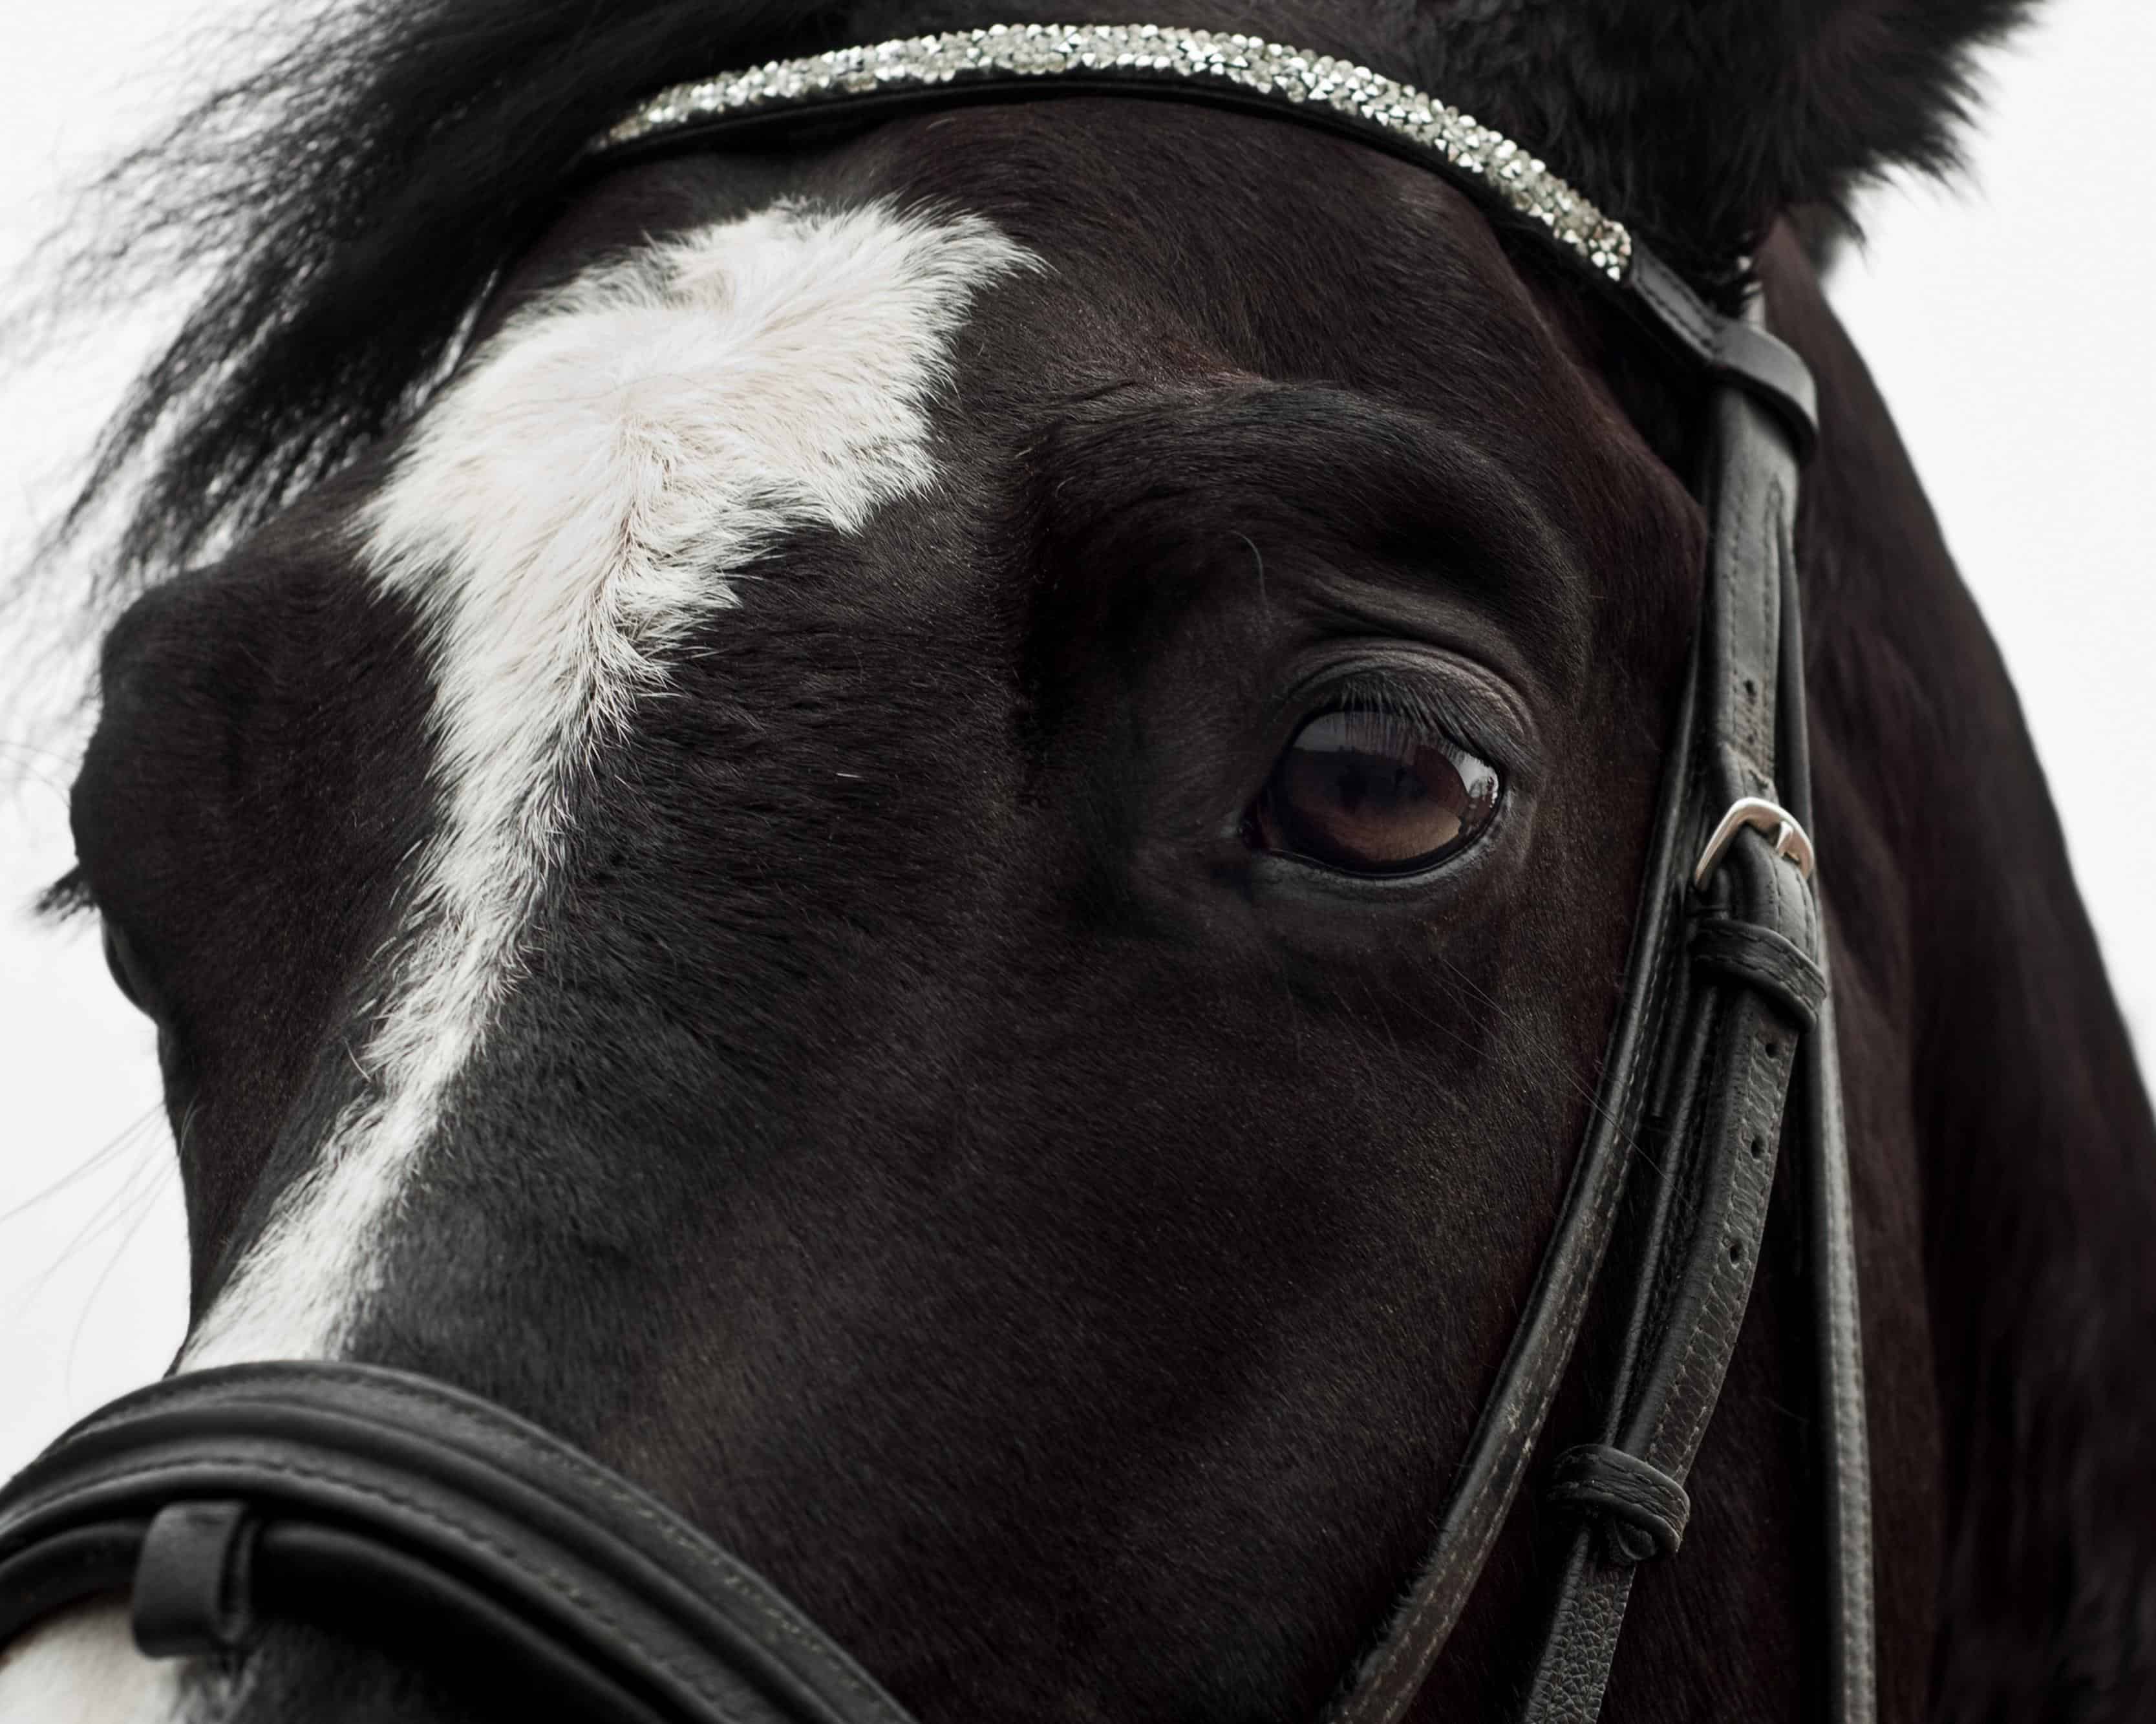 Tête d'un cheval noir image stock. Image du beau, étalon - 23499881